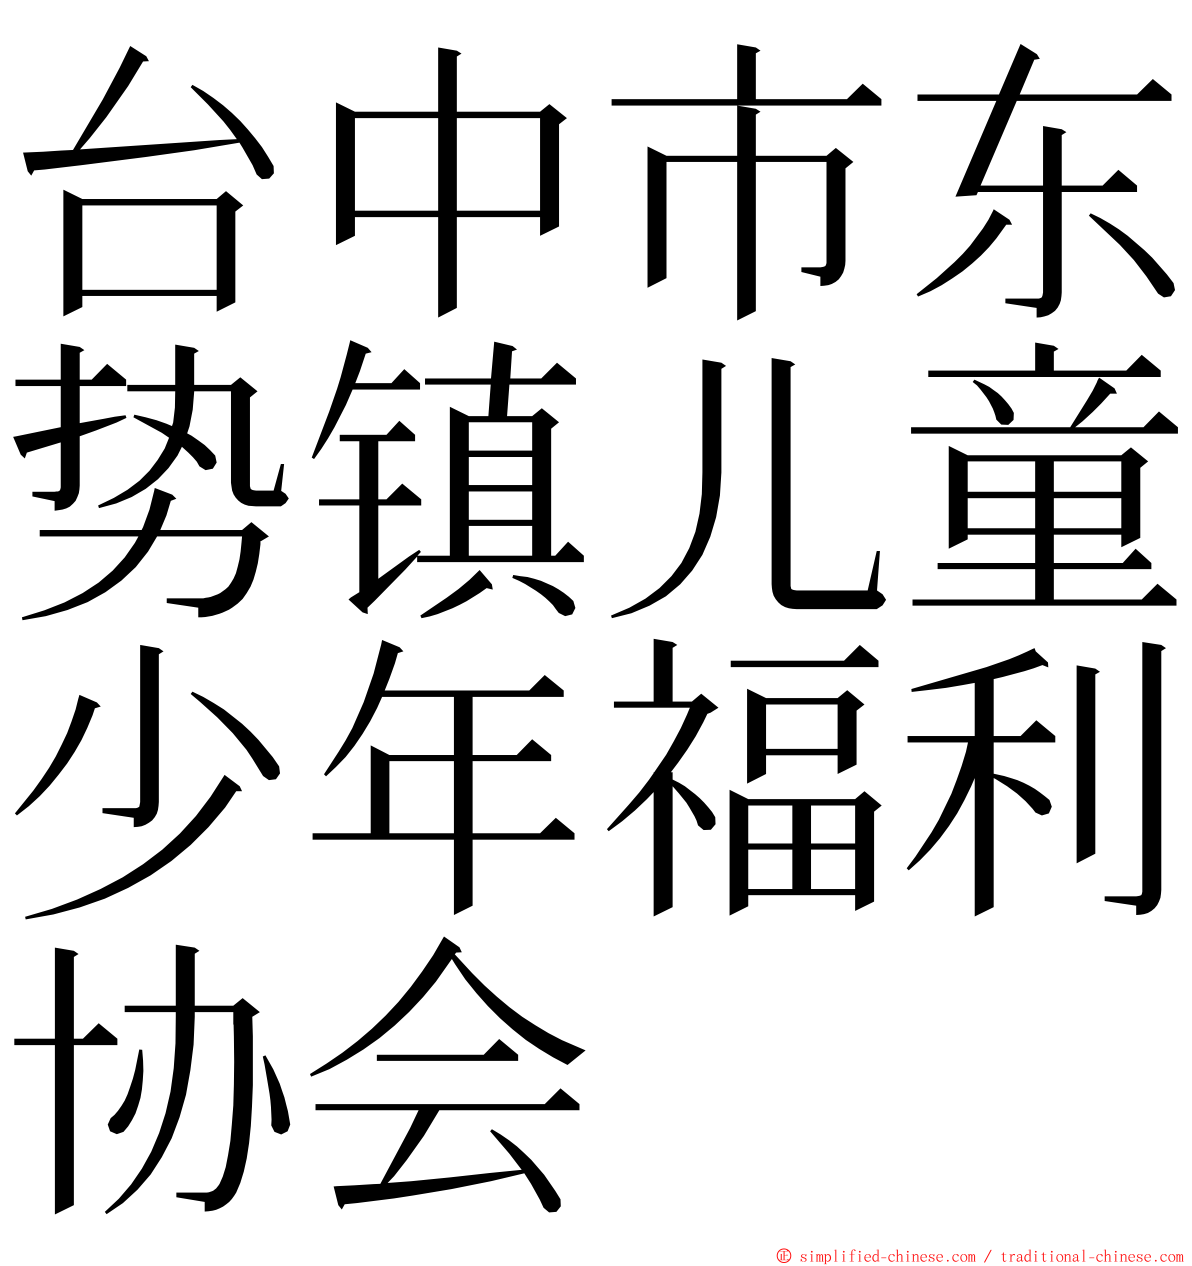 台中市东势镇儿童少年福利协会 ming font